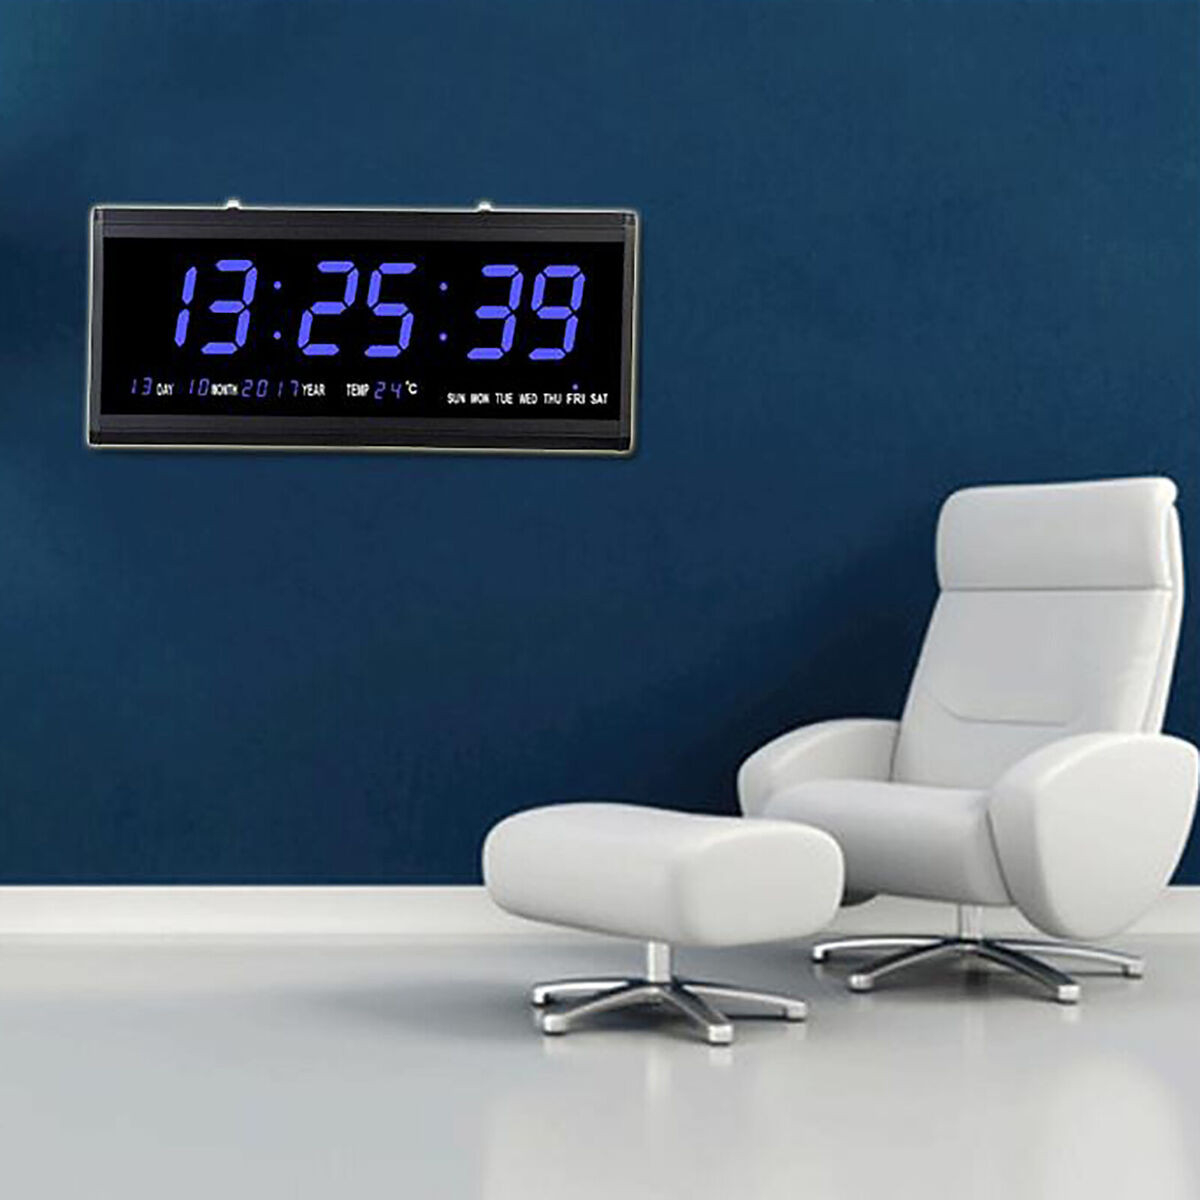 Led Digitaluhr Große Digital Wohnzimmer Wanduhr Mit Datum Temperatur  Kalender within Digitaluhr Wohnzimmer